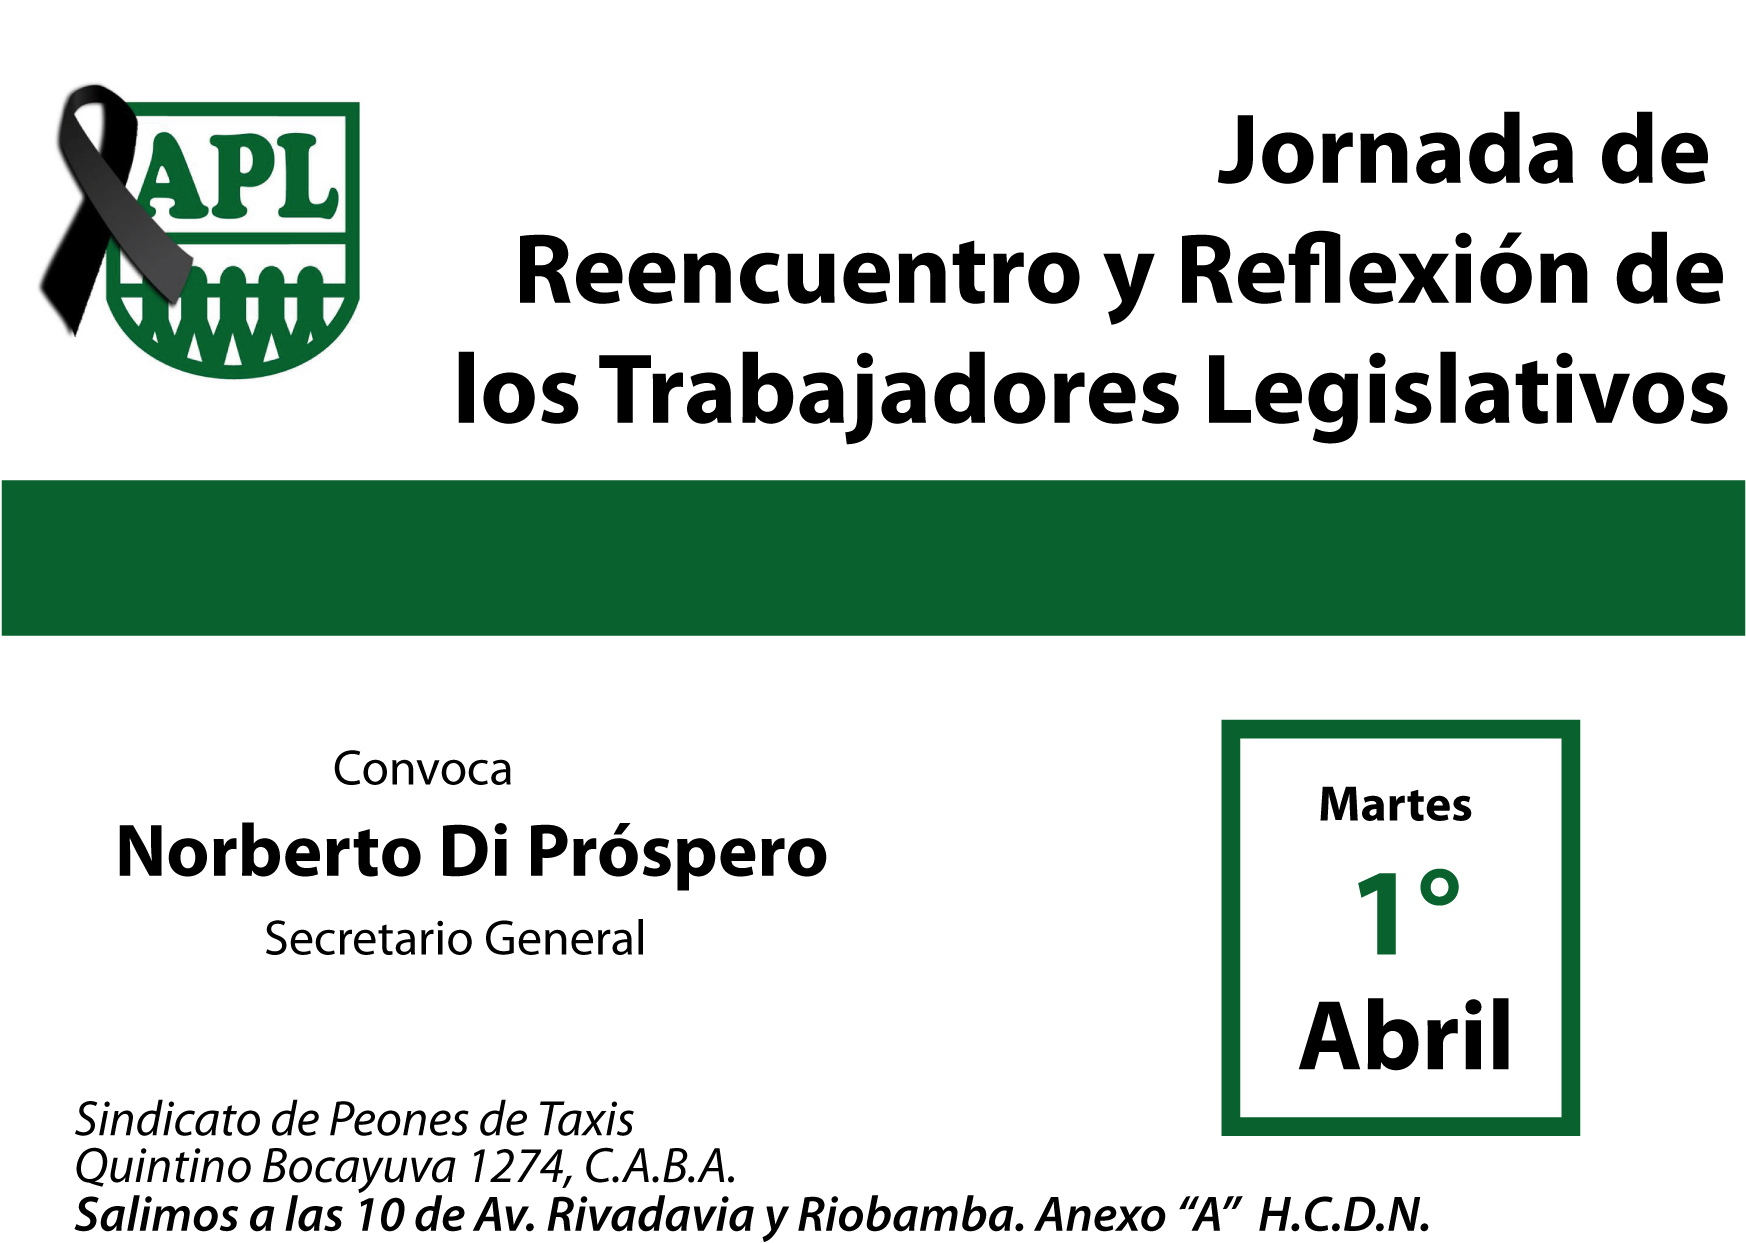 Jornada de Reencuentro y Reflexión de los Trabajadores Legislativos.